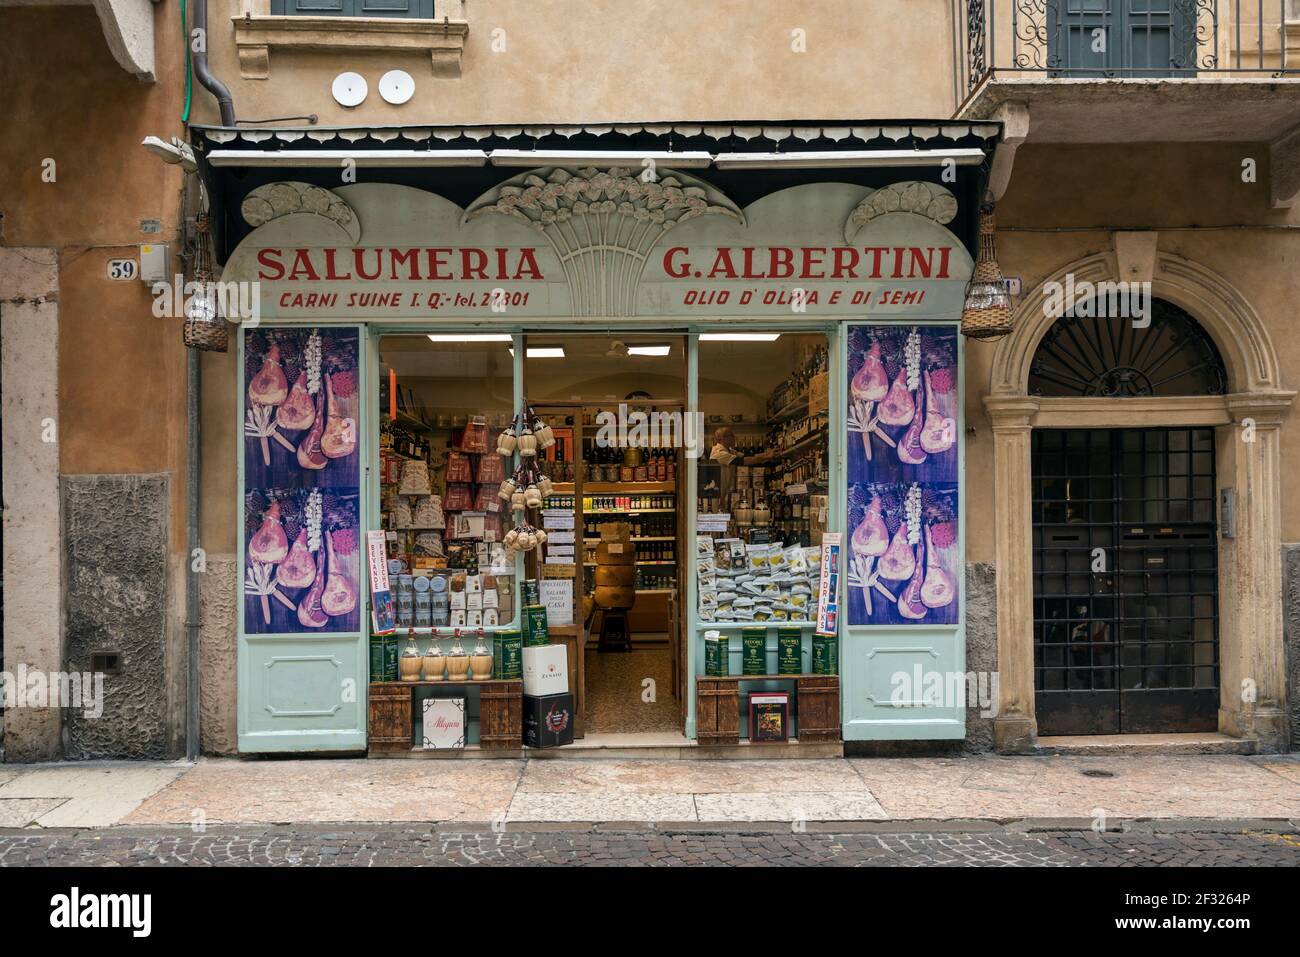 Italia, Verona, salumeria. Una salumeria es un productor de alimentos y tienda minorista que produce salumi y otros productos alimenticios. Foto de stock